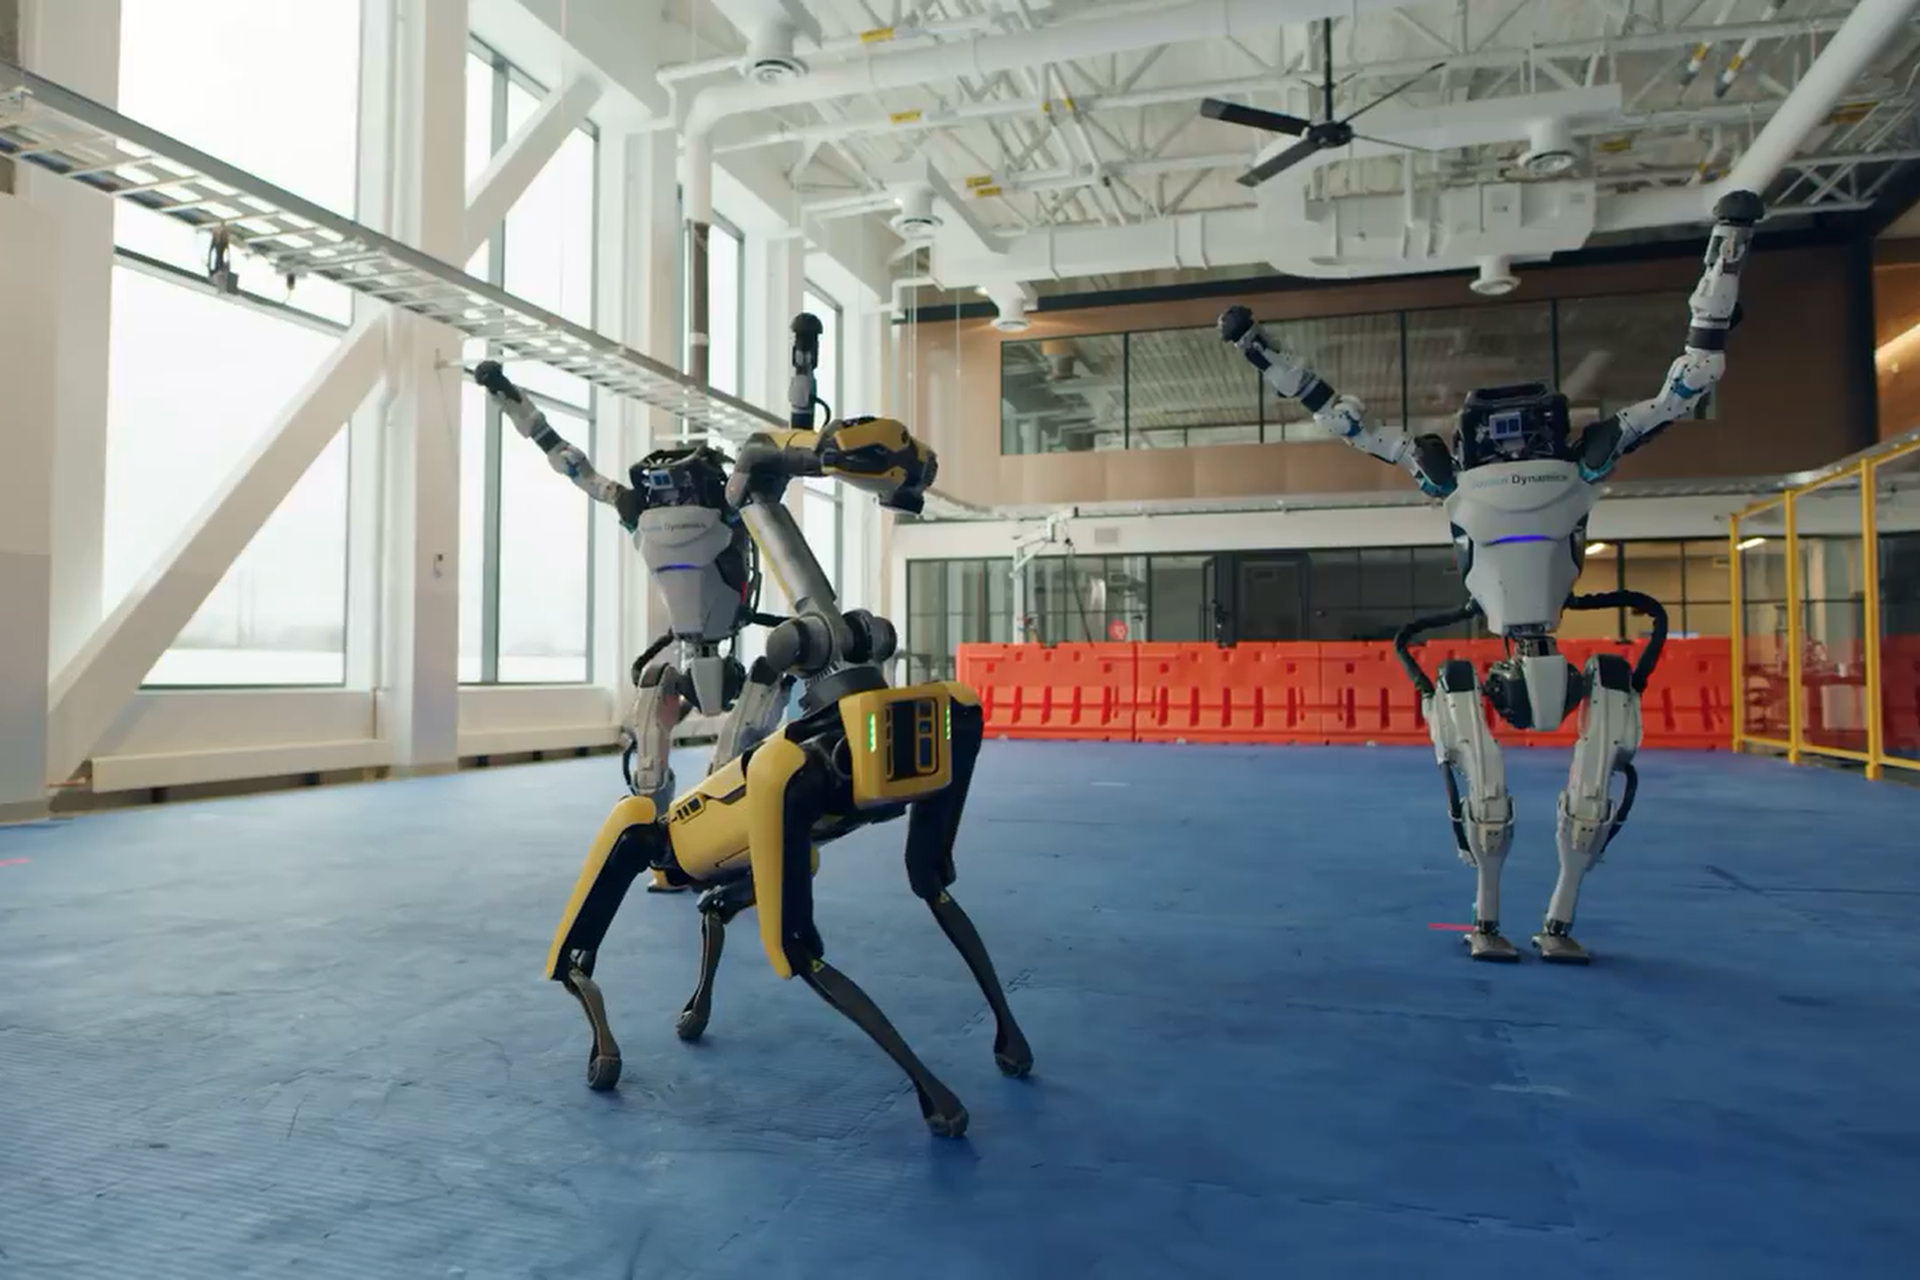 بوستون داینامیکس ویدئویی از رقصیدن ربات های اطلس و اسپات منتشر کرد